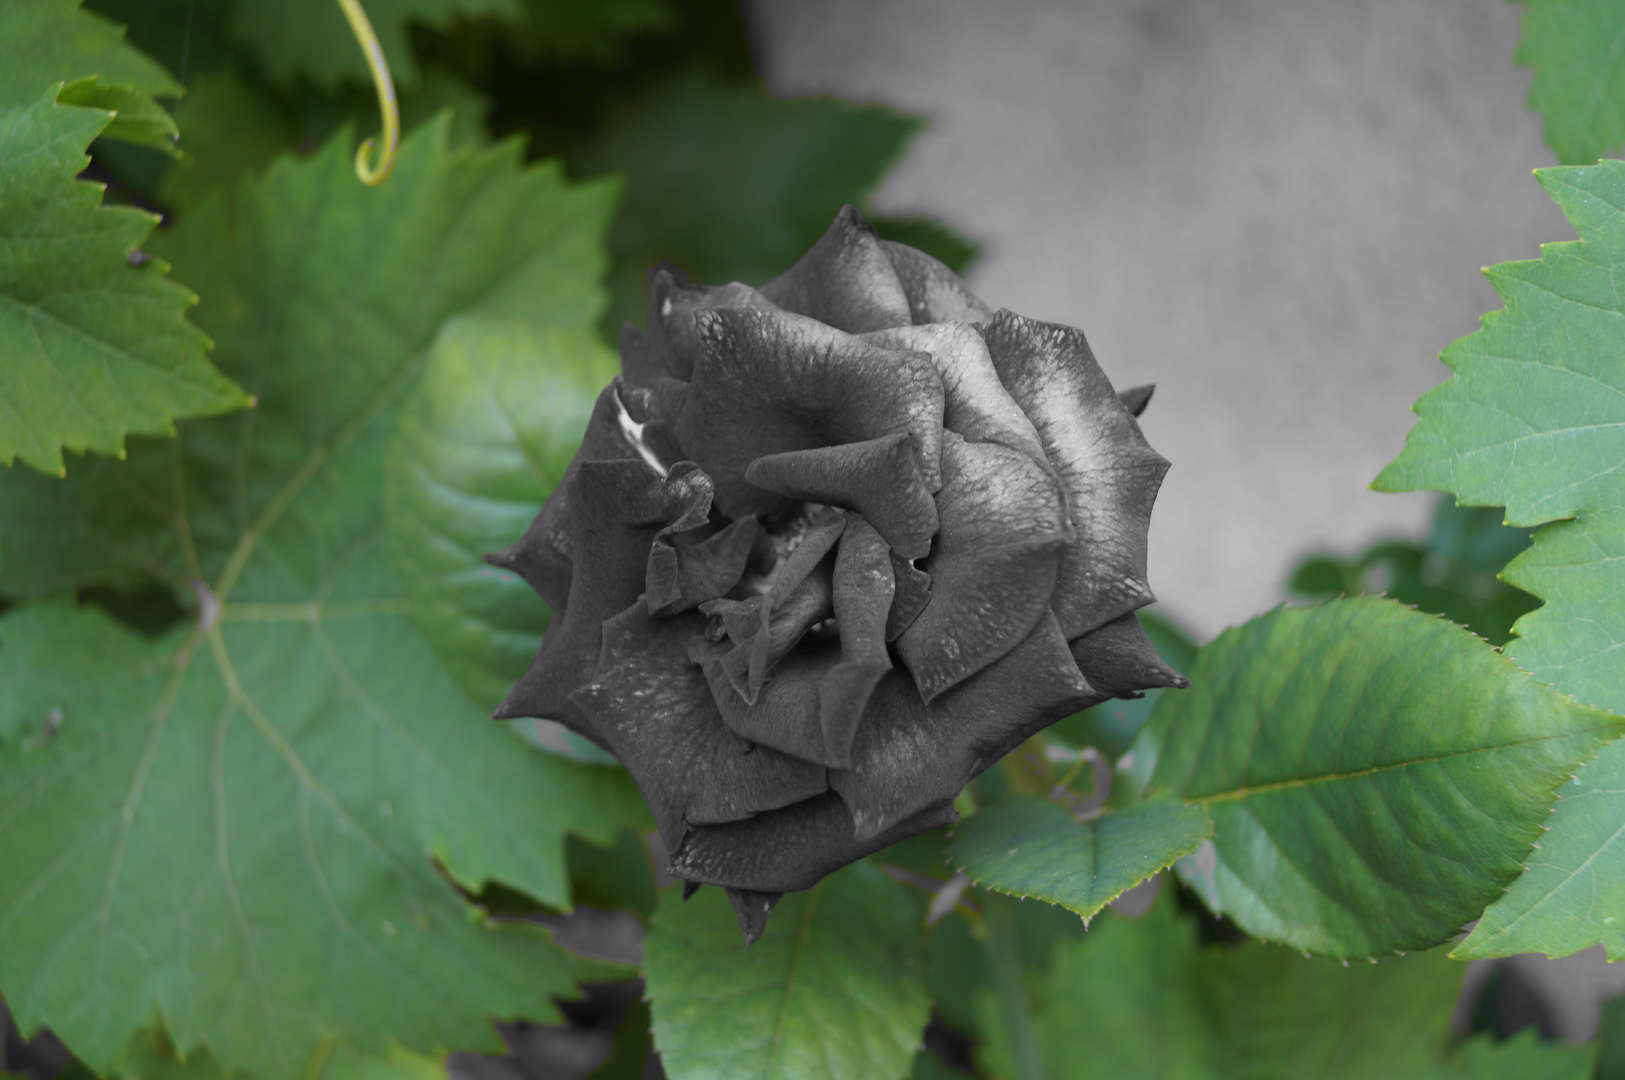 Die graue Rose